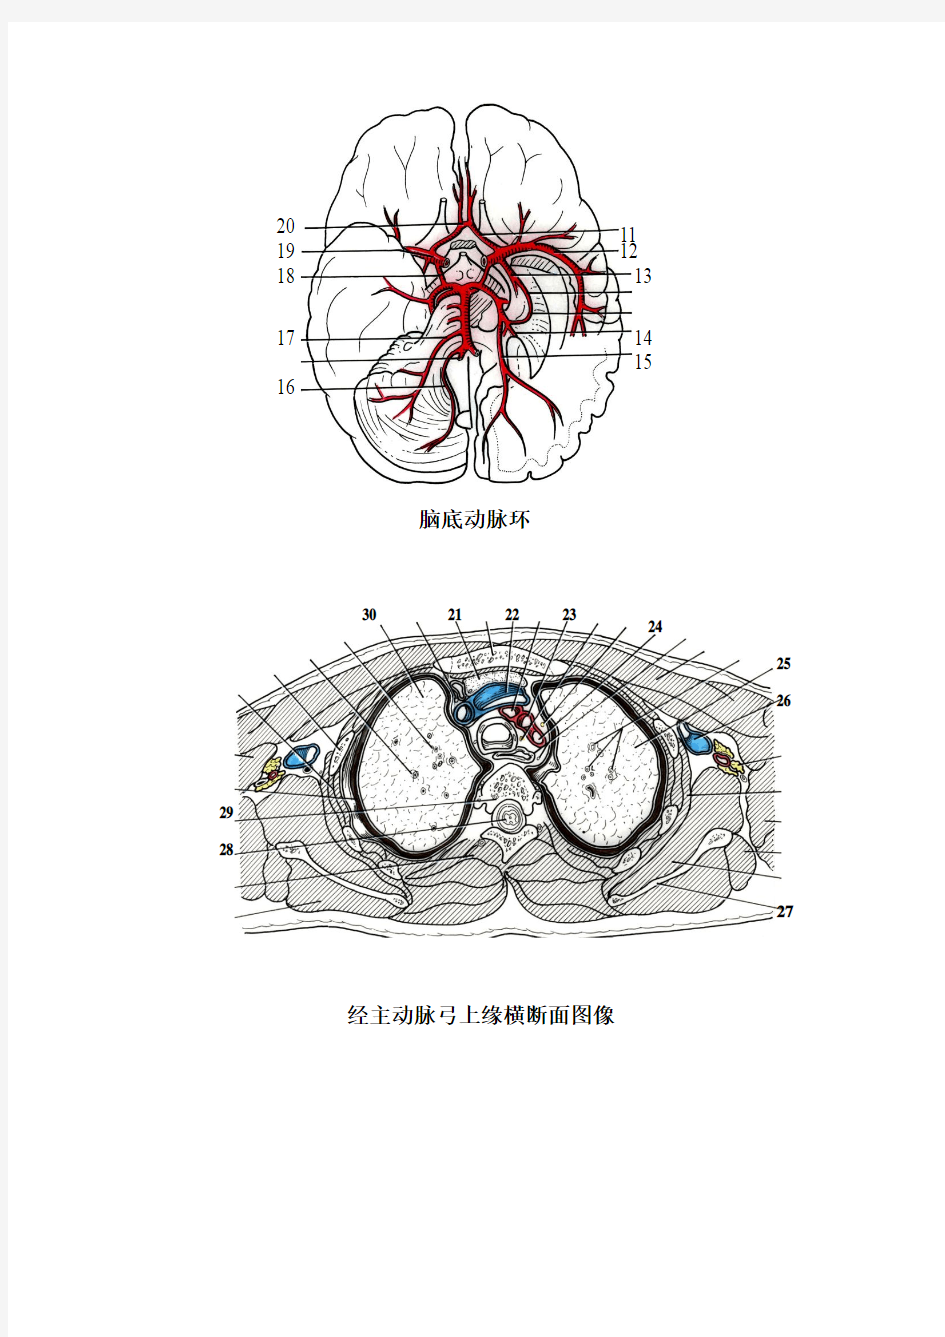 断层解剖学_刘树伟_00级七年制断层解剖学试题中文